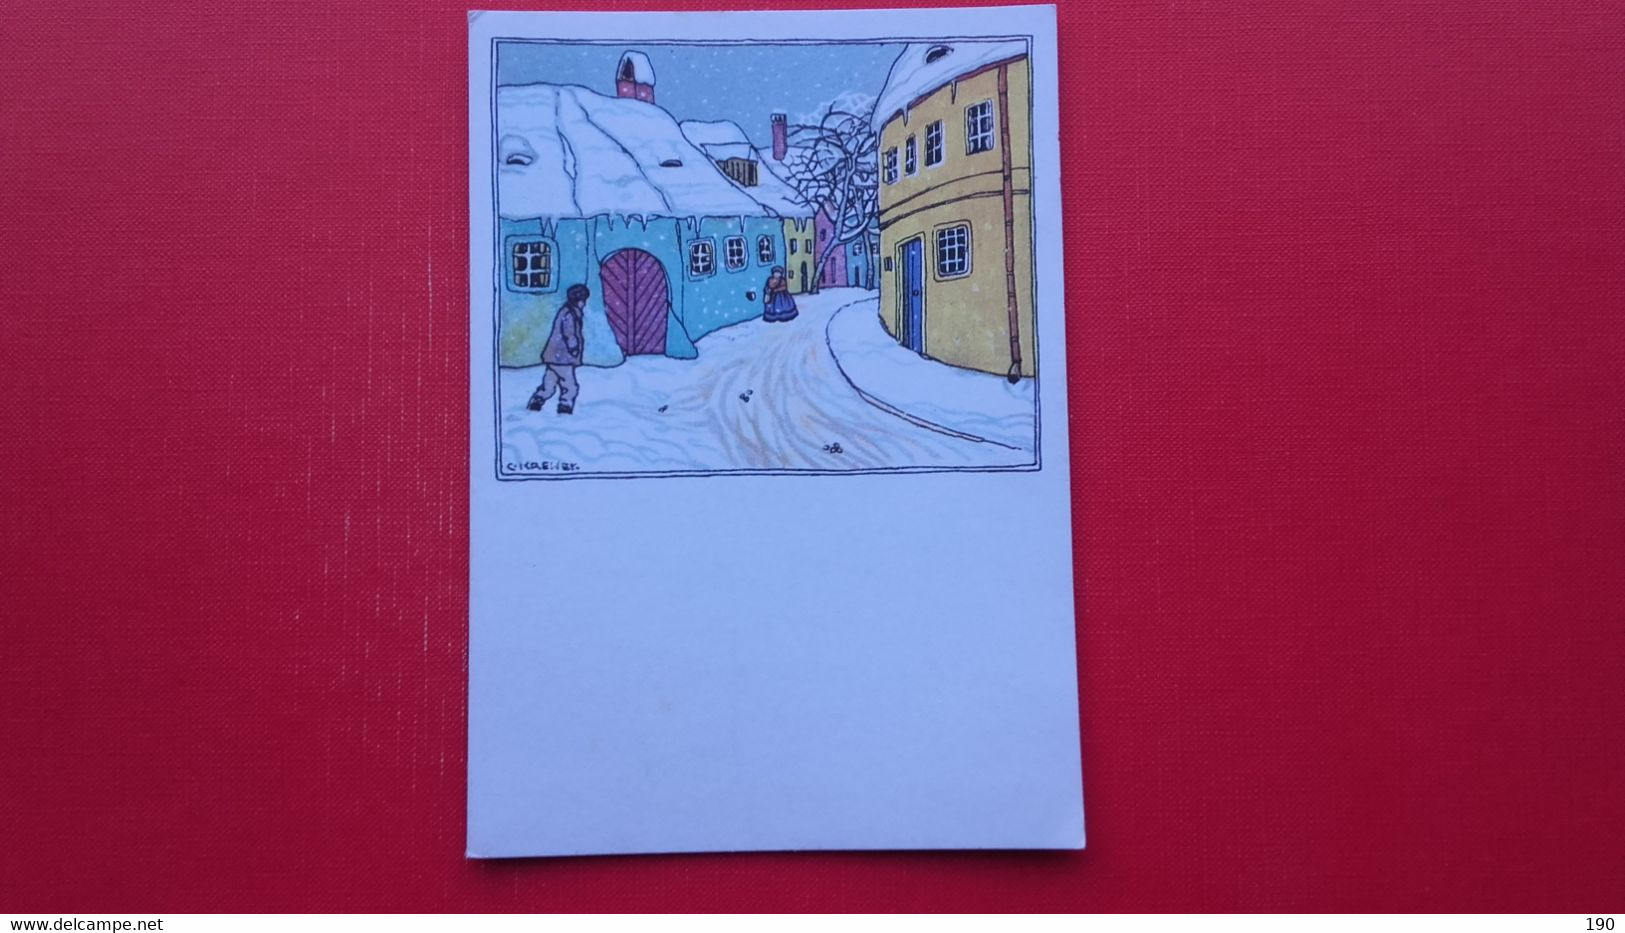 Unicef.Village Street In Snow...by Carl Krenek,Wiener Werkstatte No.909 - Wiener Werkstaetten